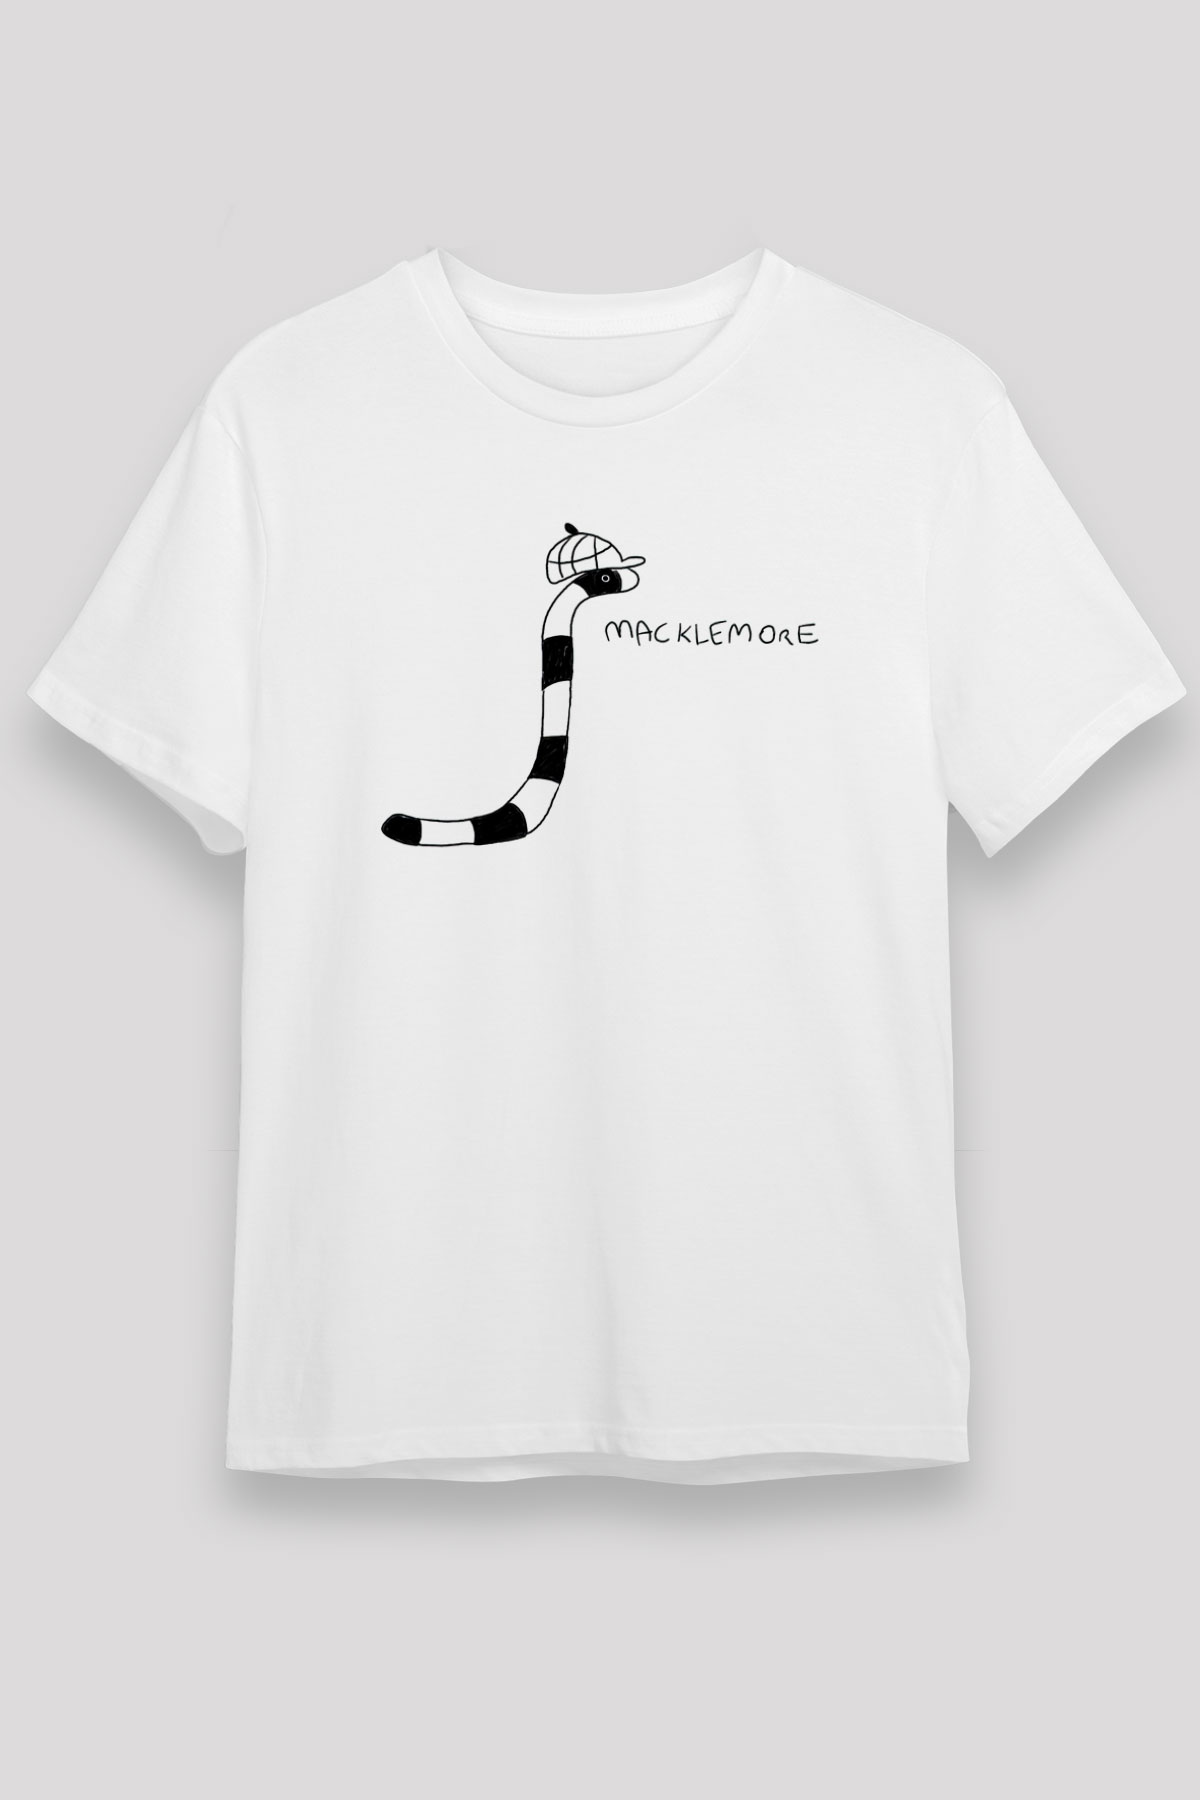 Macklemore T shirt,Hip Hop,Rap Tshirt 01